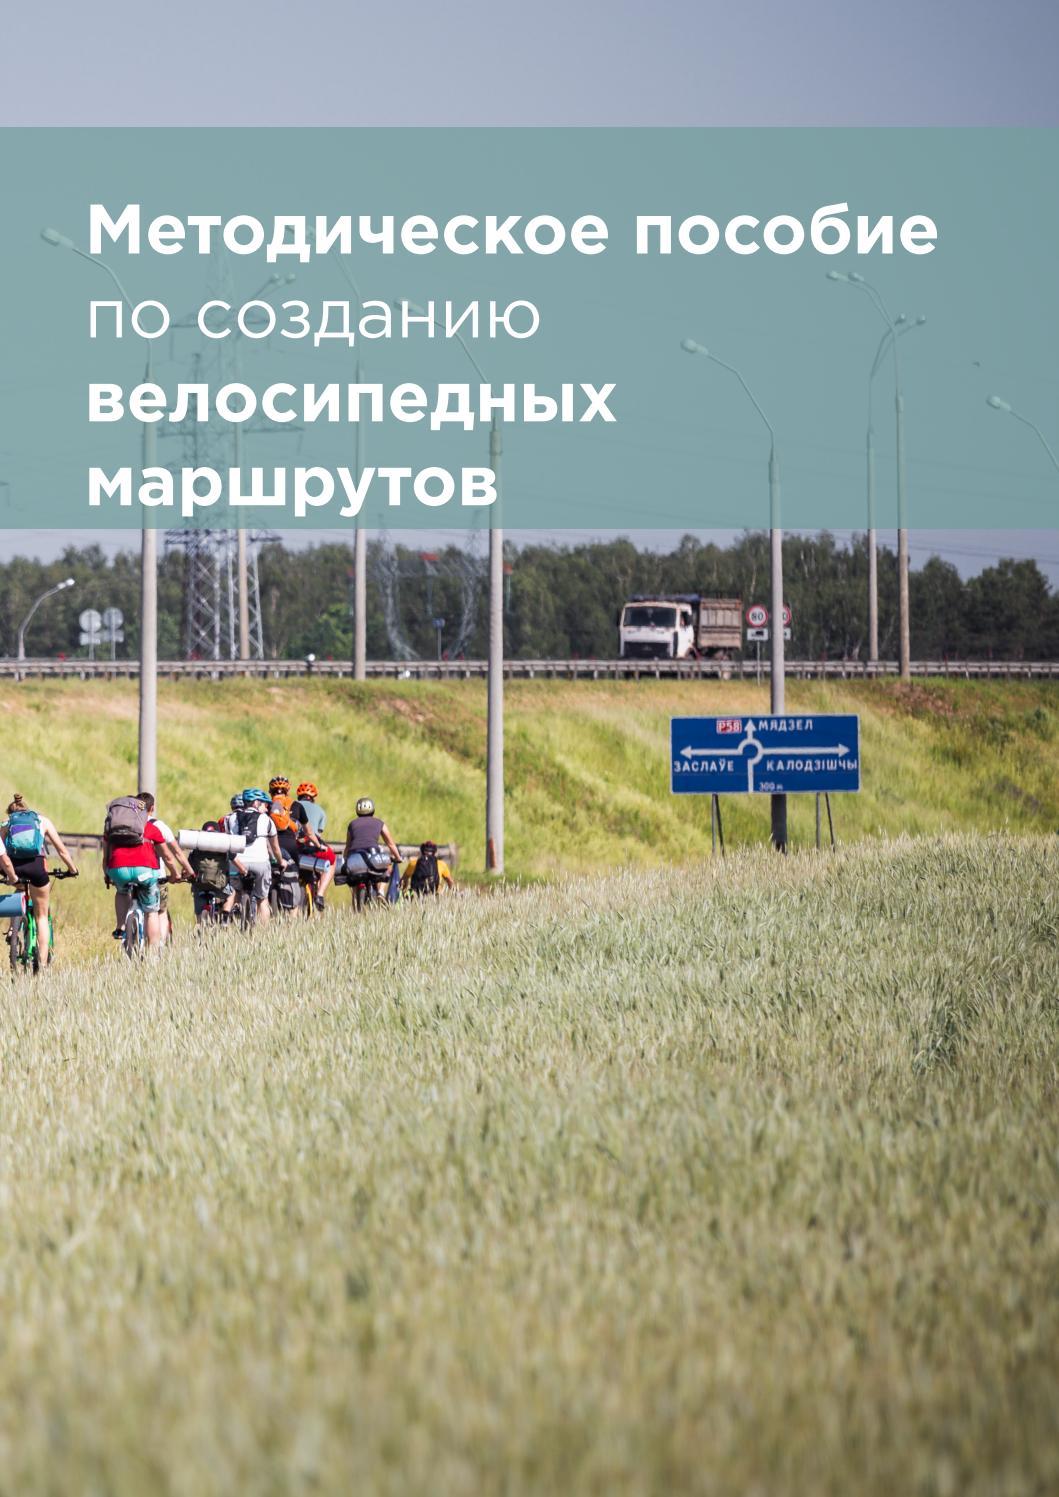 Des lignes directrices pour organiser la circulation sécuritaire des cyclistes seront créées